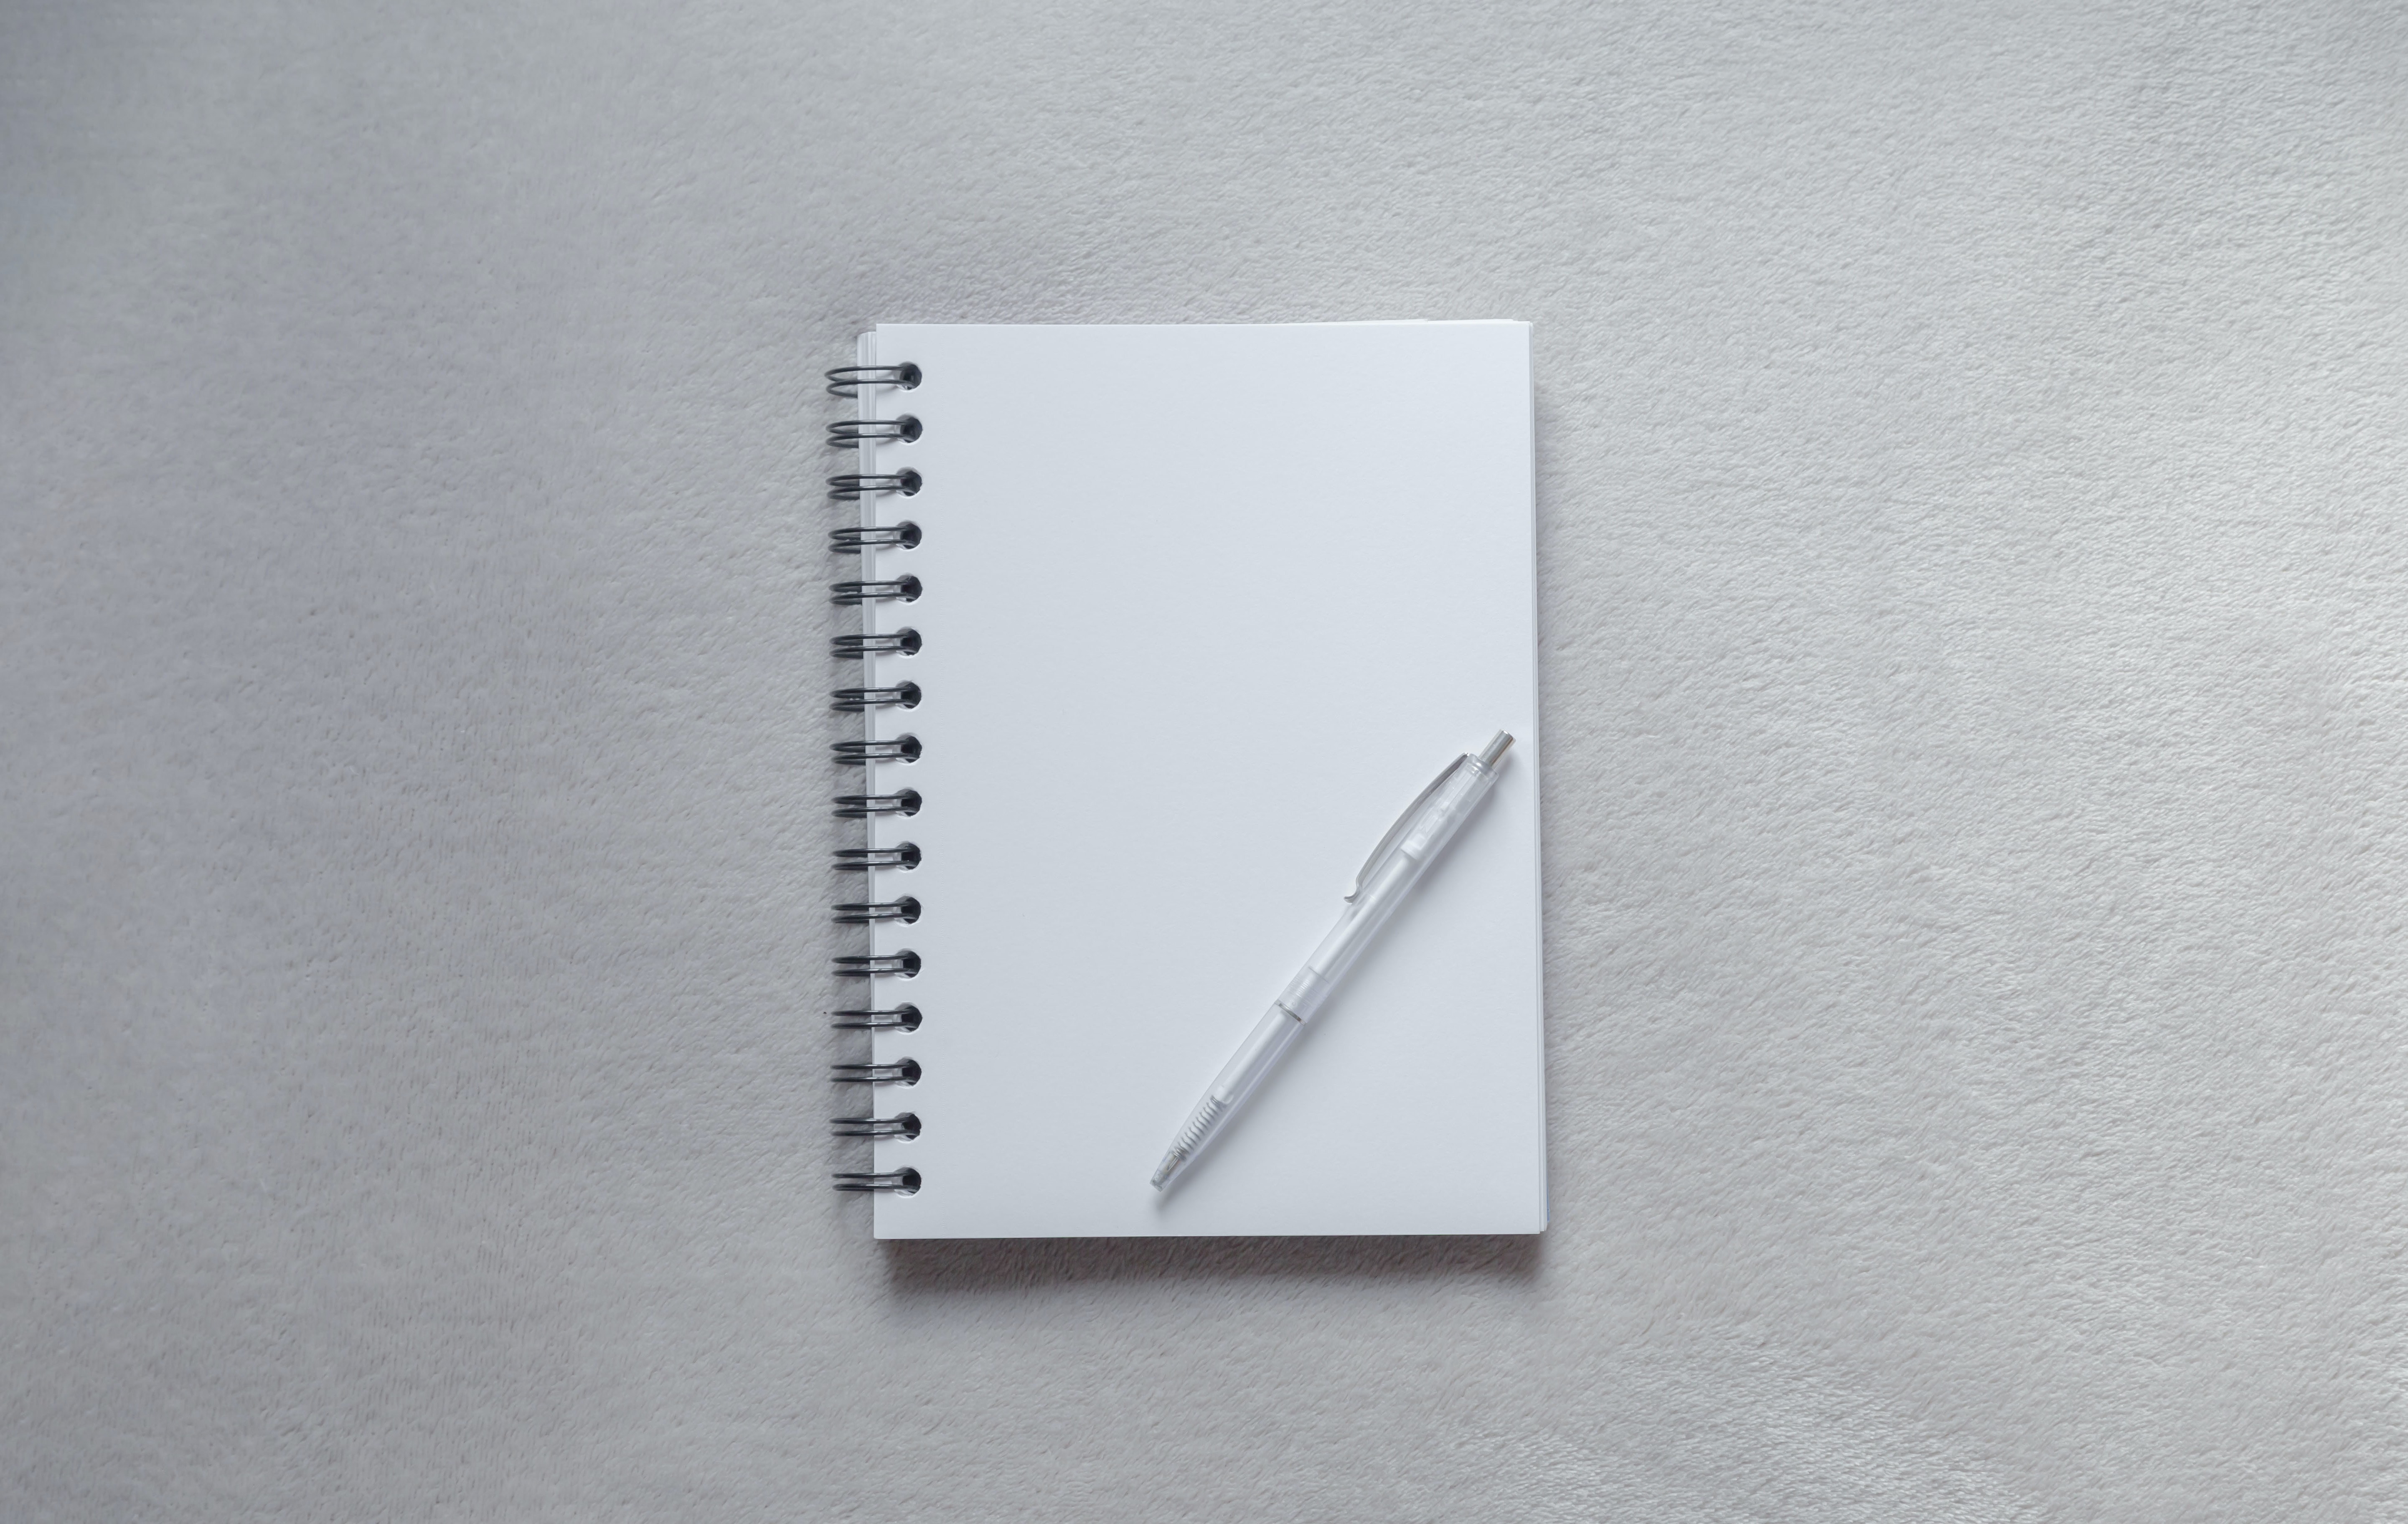 Oppiminen ja työelämä | Kuvassa tyhjä muistikirja ja kynä